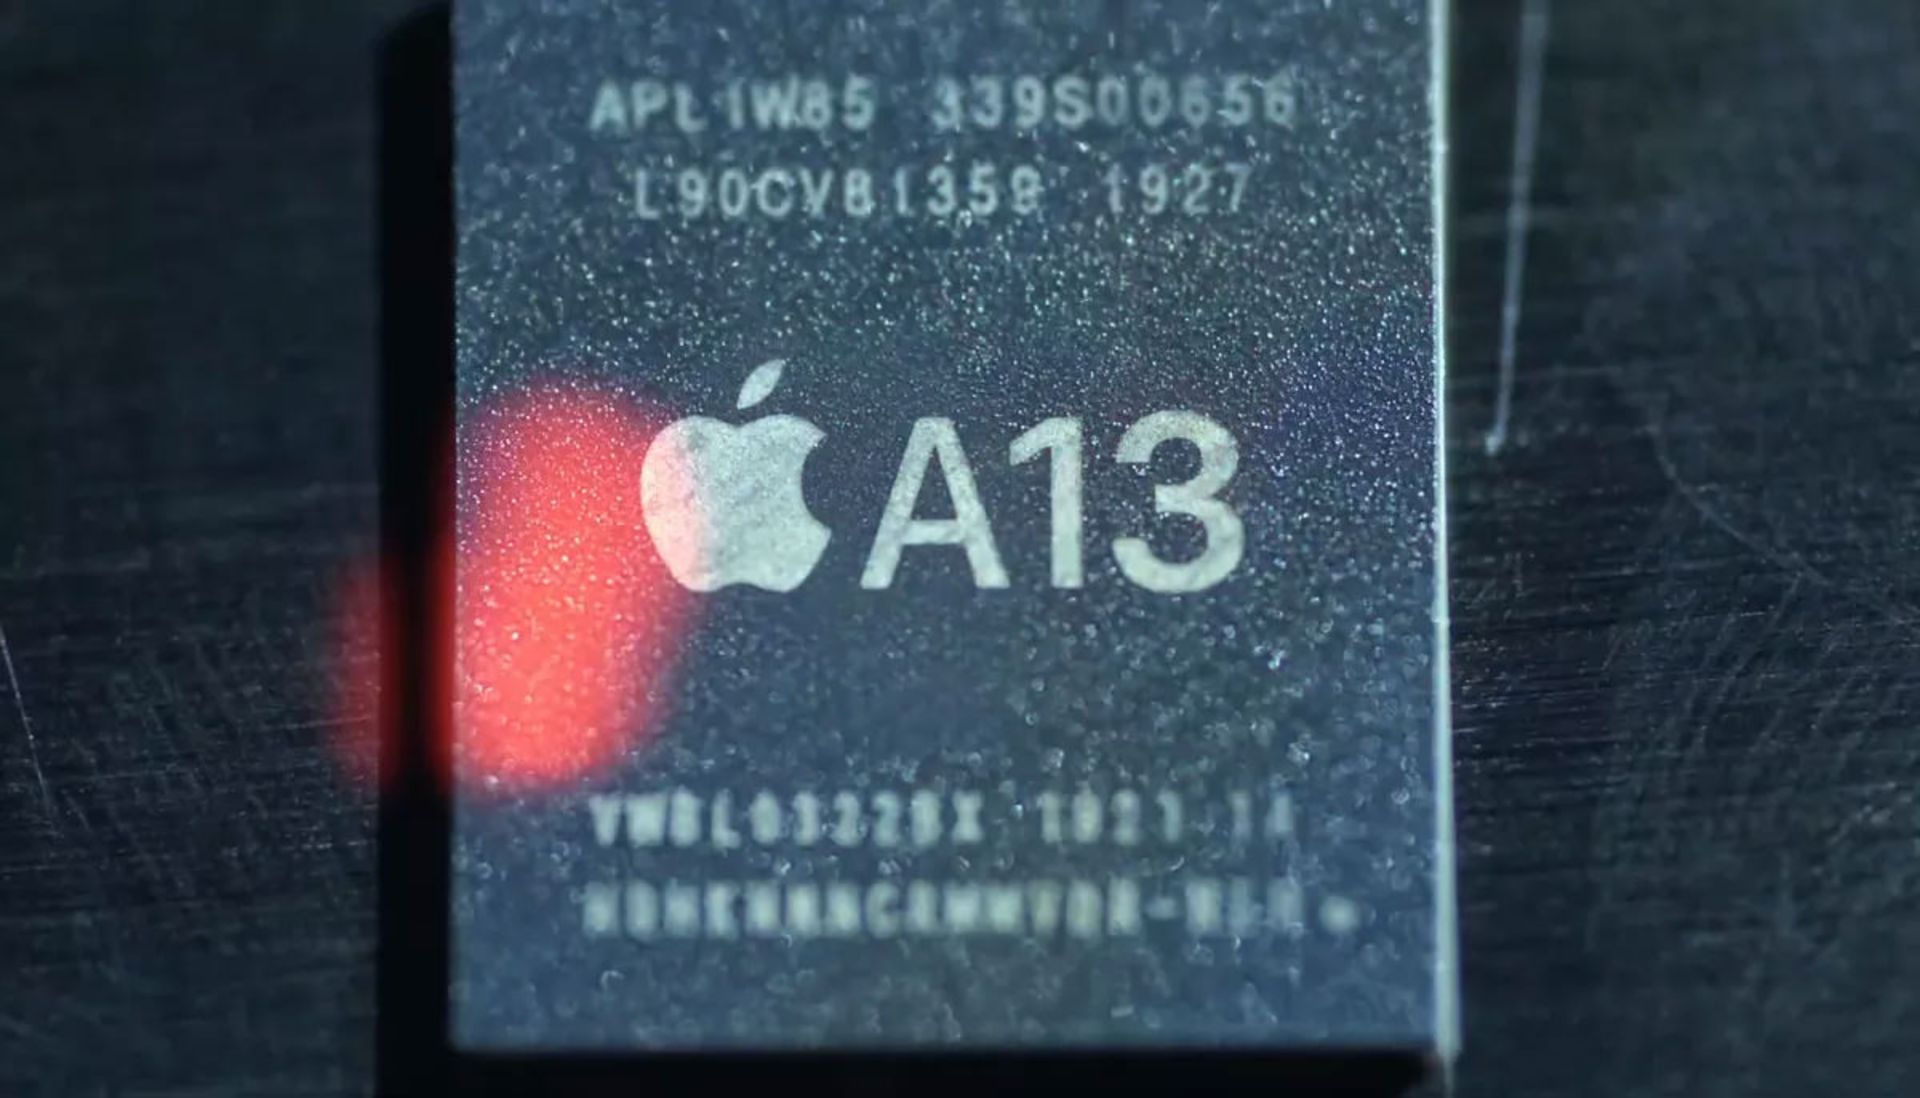 تراشه a13 بایونیک اپل / apple a13 bionic chip